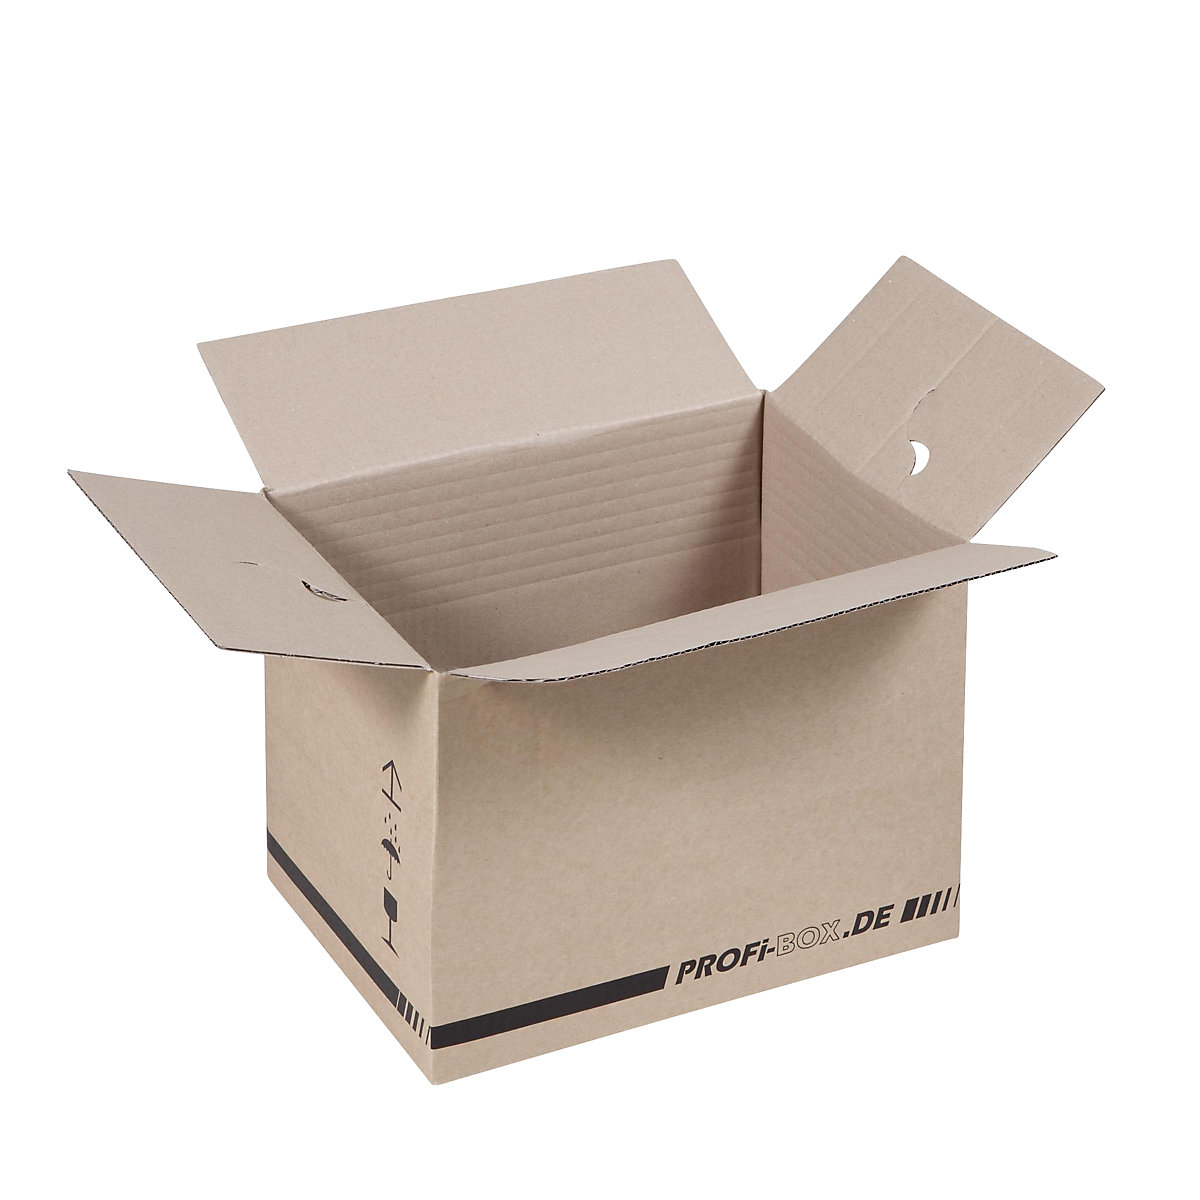 Profi box, z 1-vlnitej lepenky, FEFCO 0701, vnútorné rozmery 305 x 215 x 220 mm, OJ 50 ks-4